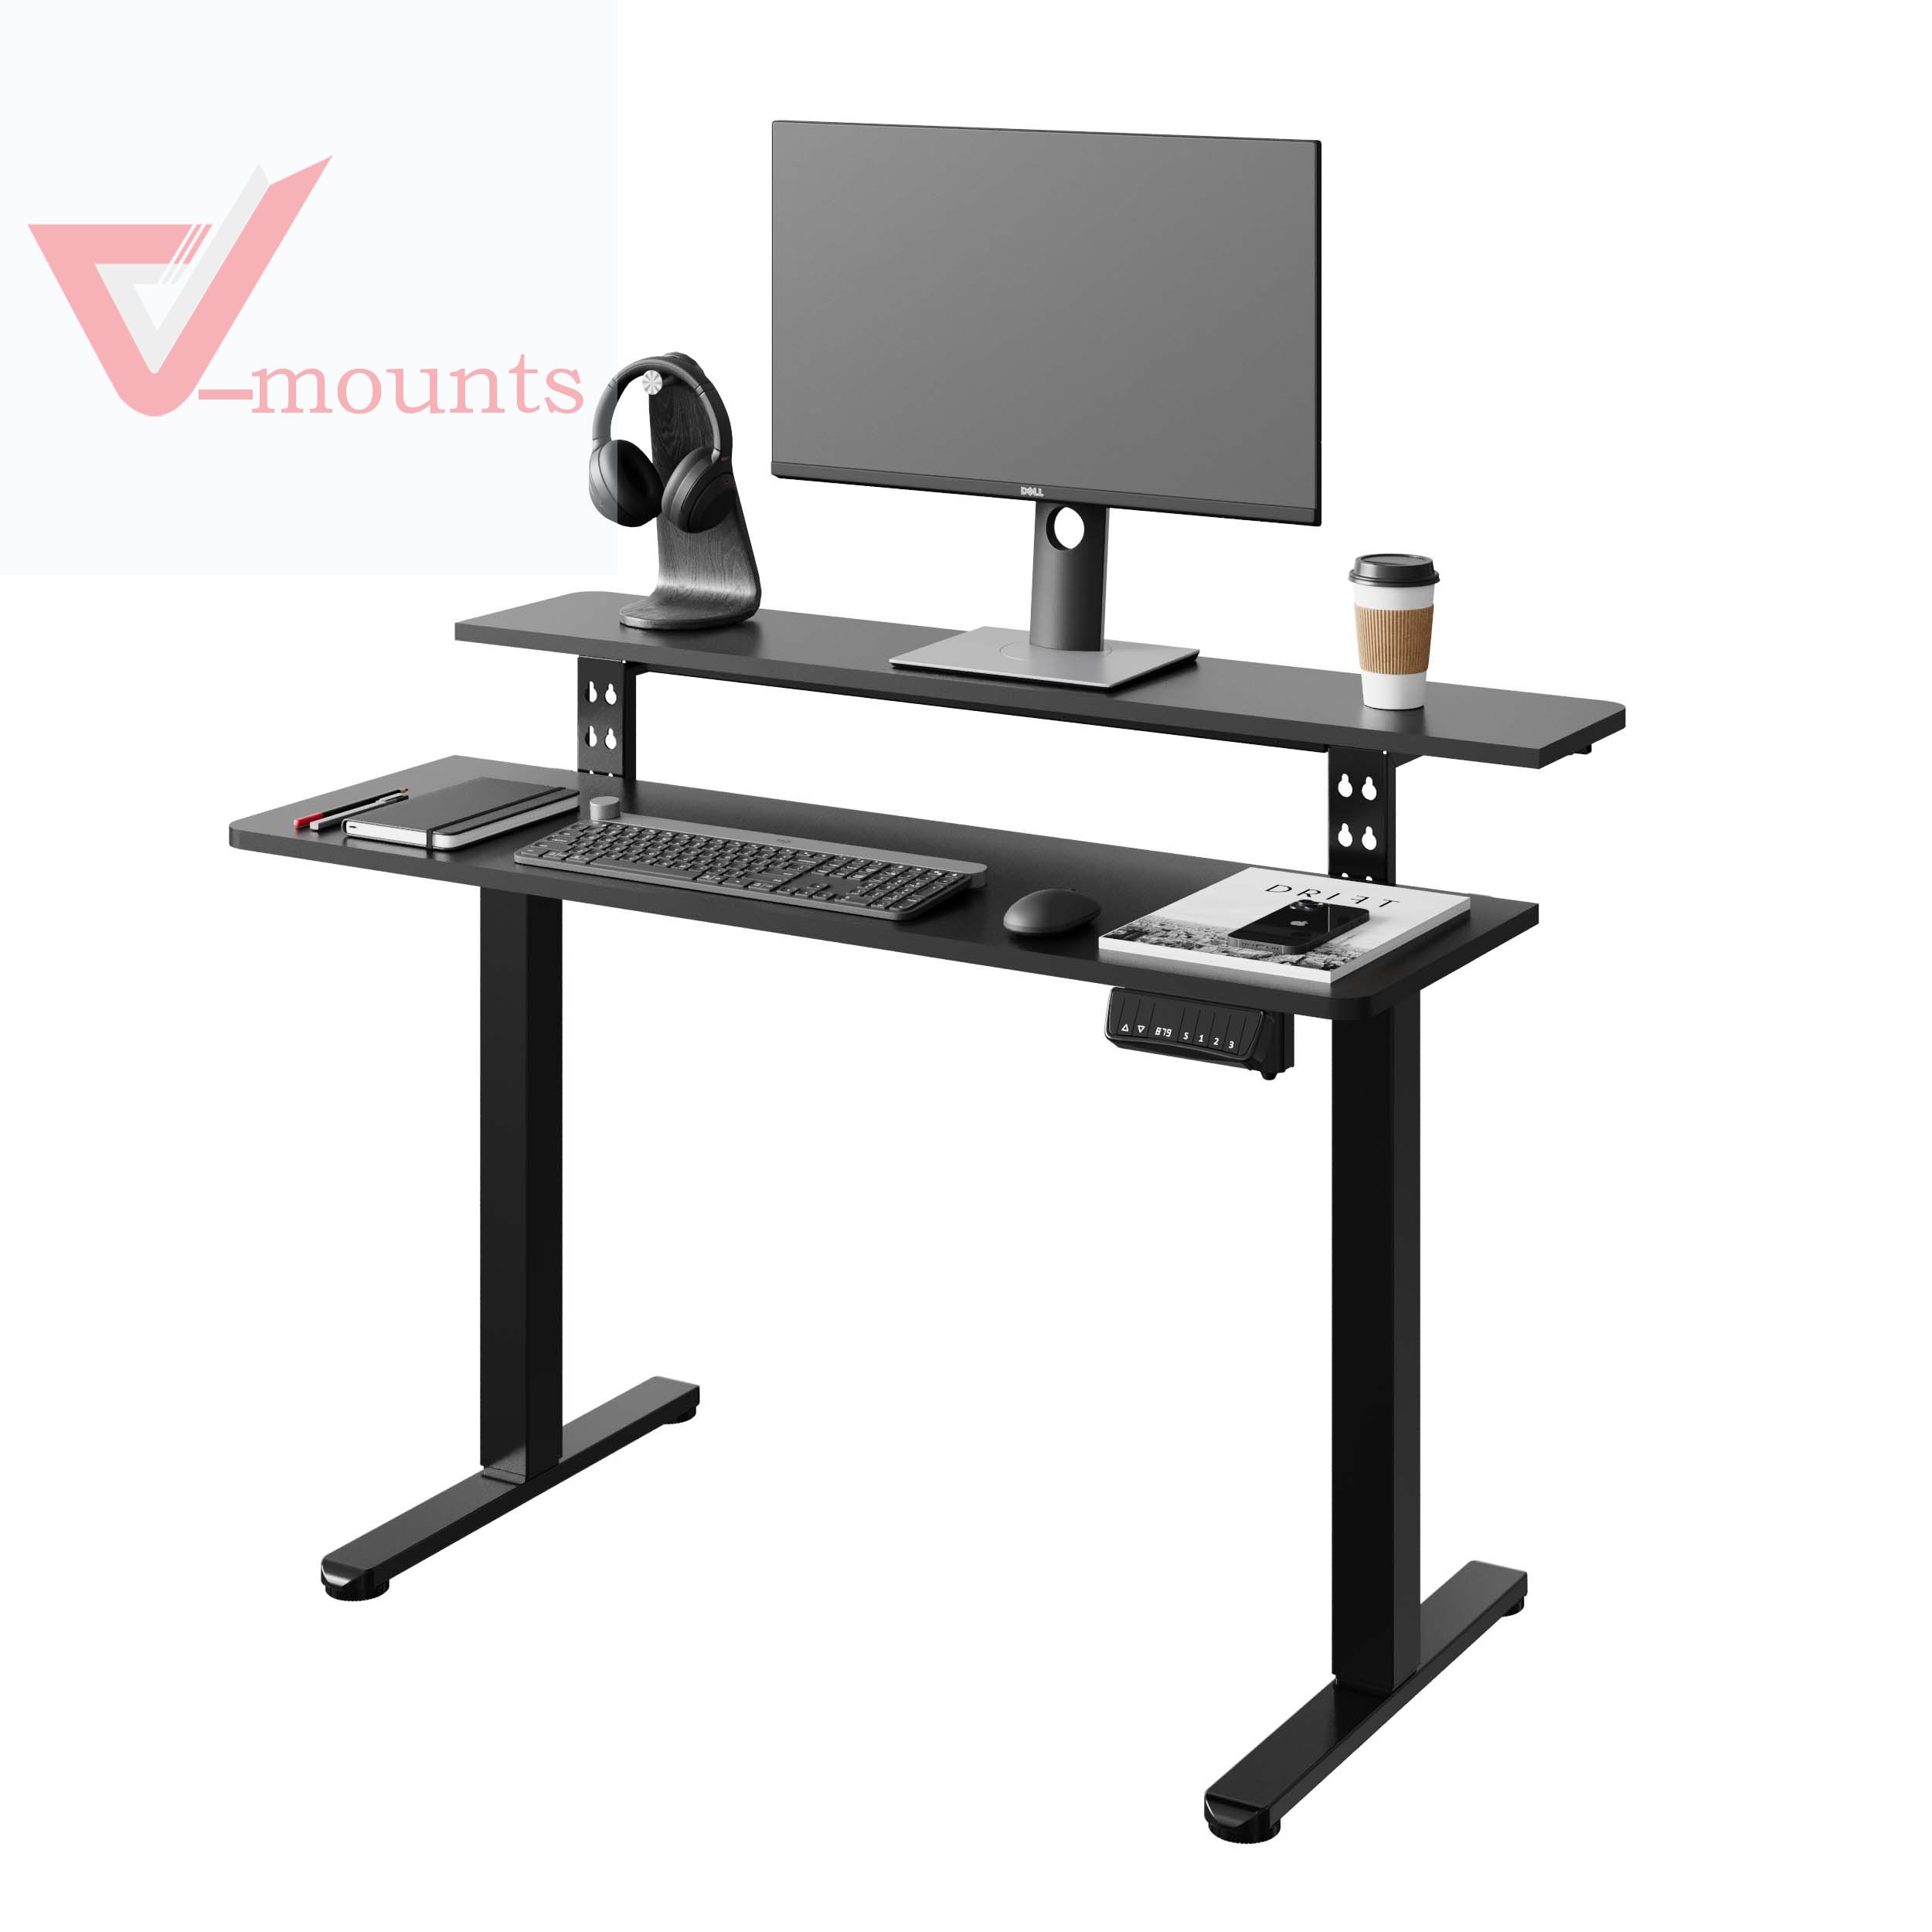 V-mounts SpaceErgo 2 Layer Desktop Single Motor Electric Adjustable Standing Desk VM-JSD5-01-DS